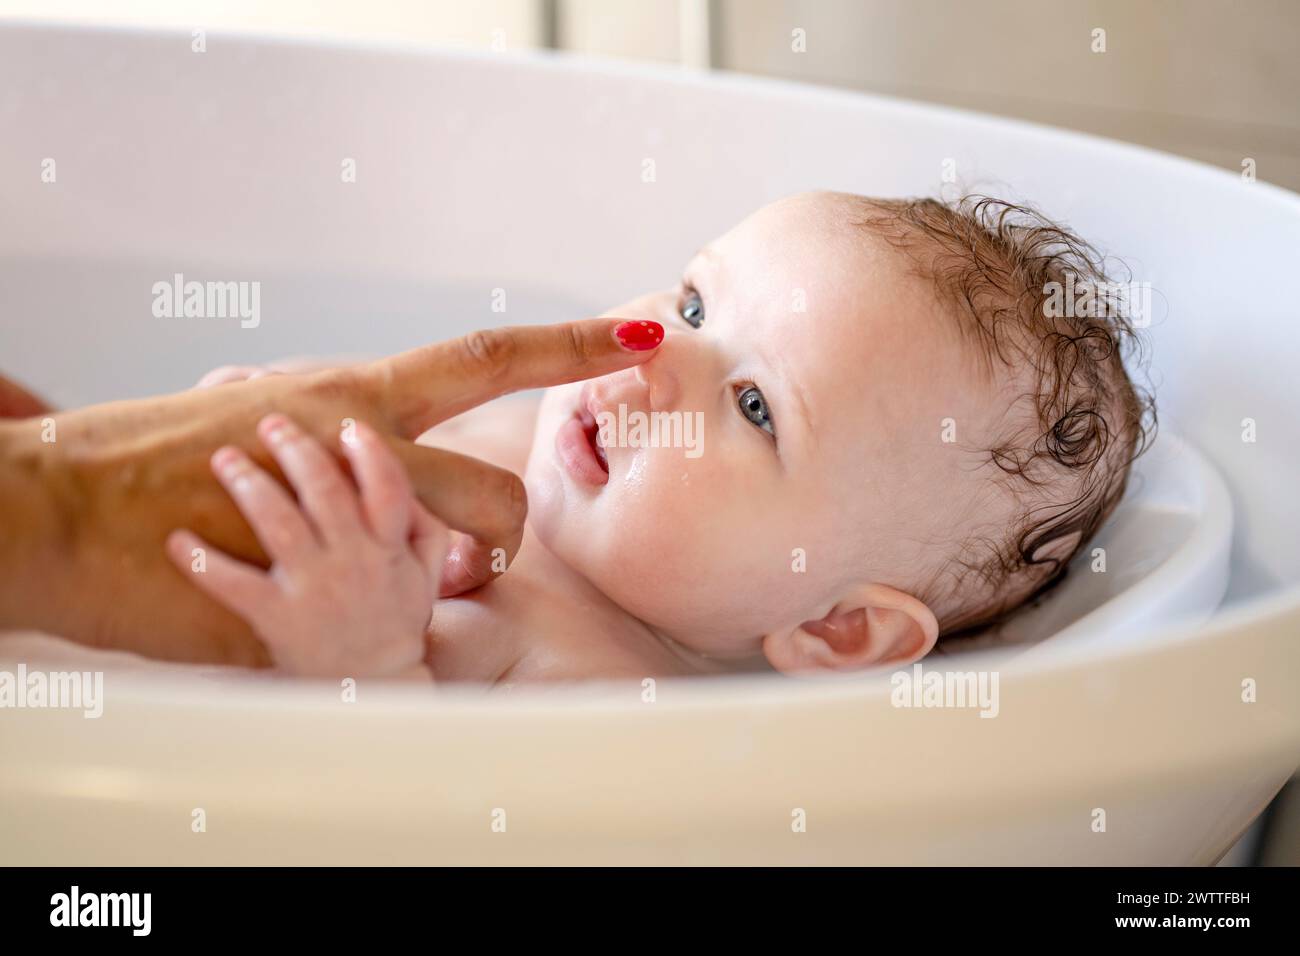 Il momento del bagnetto del bambino con un tocco giocoso sul naso Foto Stock